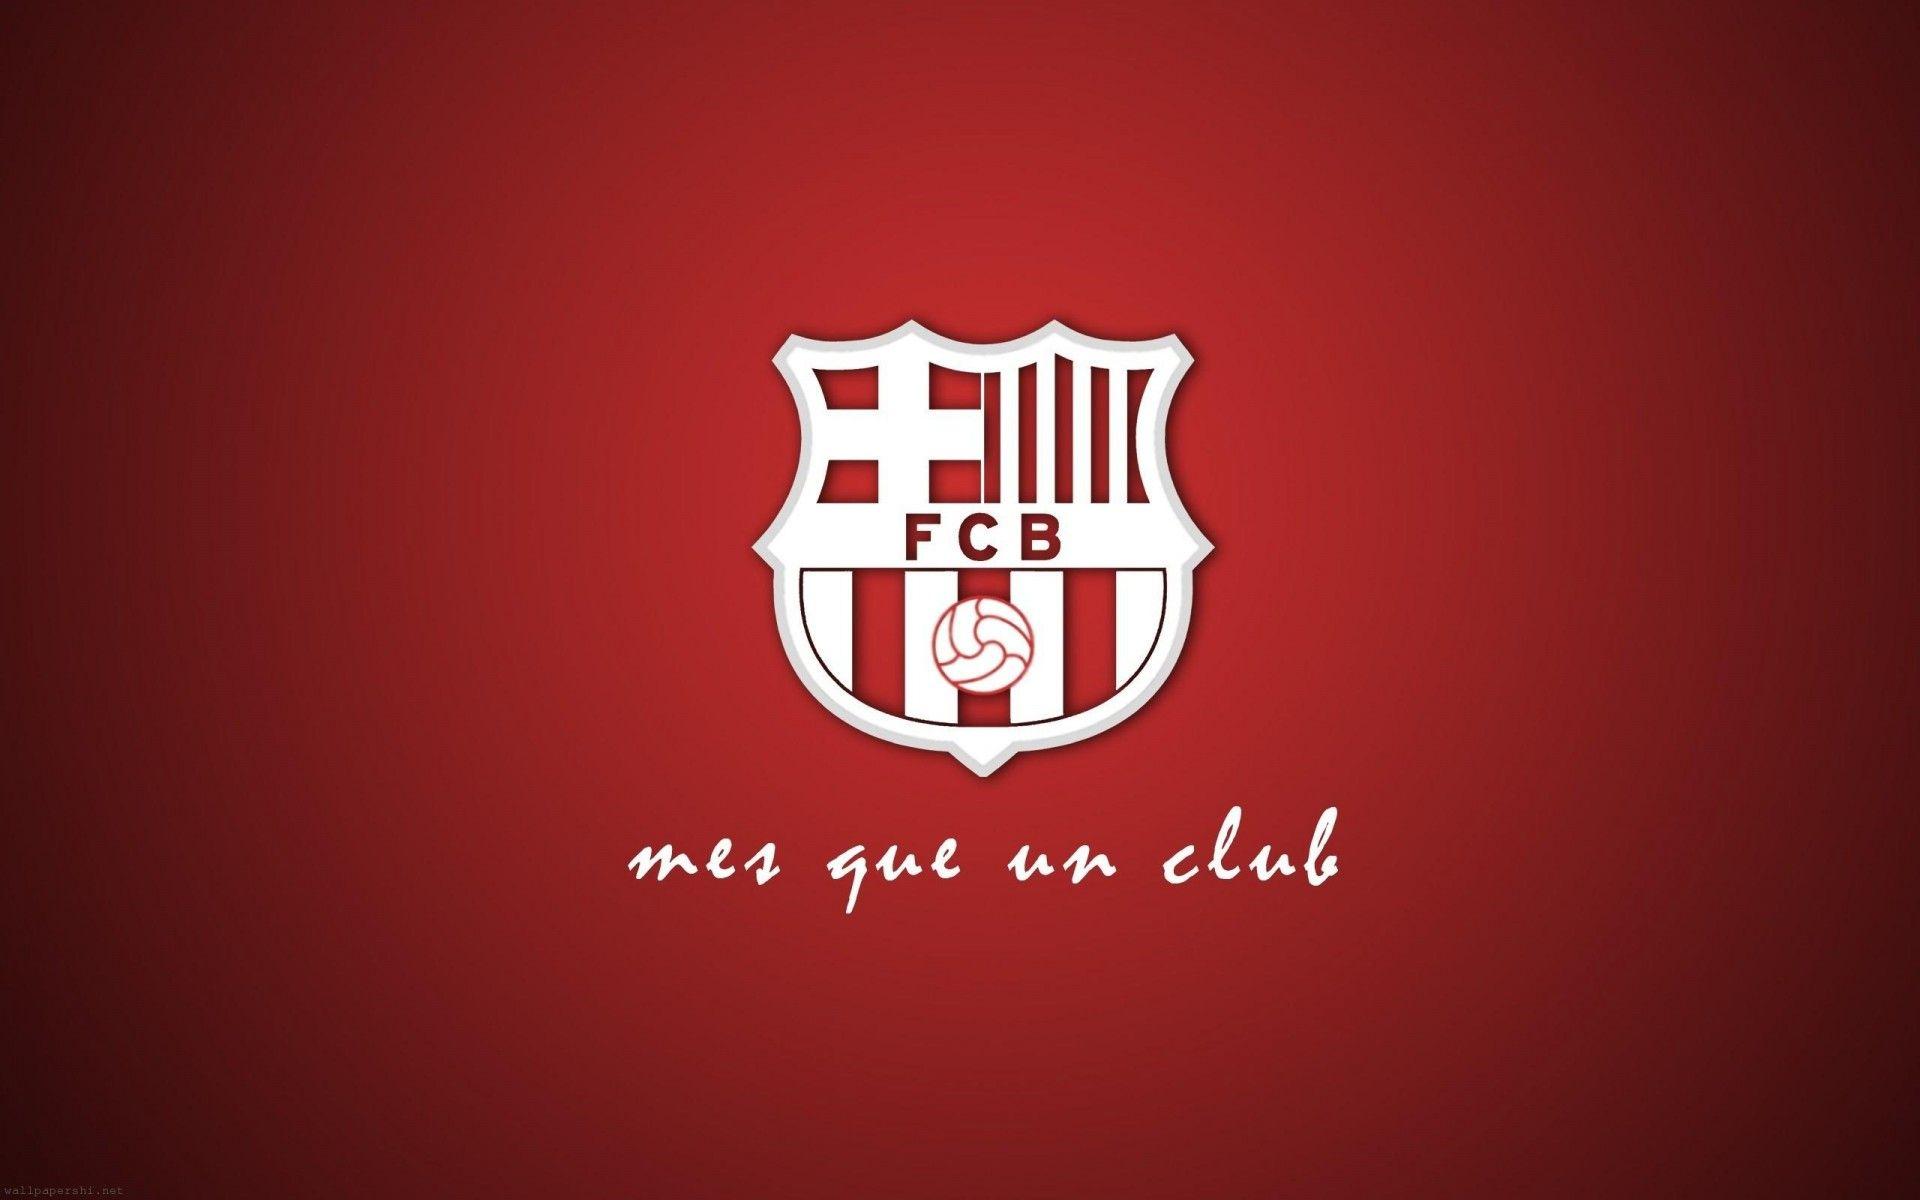 باشگاه فوتبال بارسلونا (FC Barcelona)